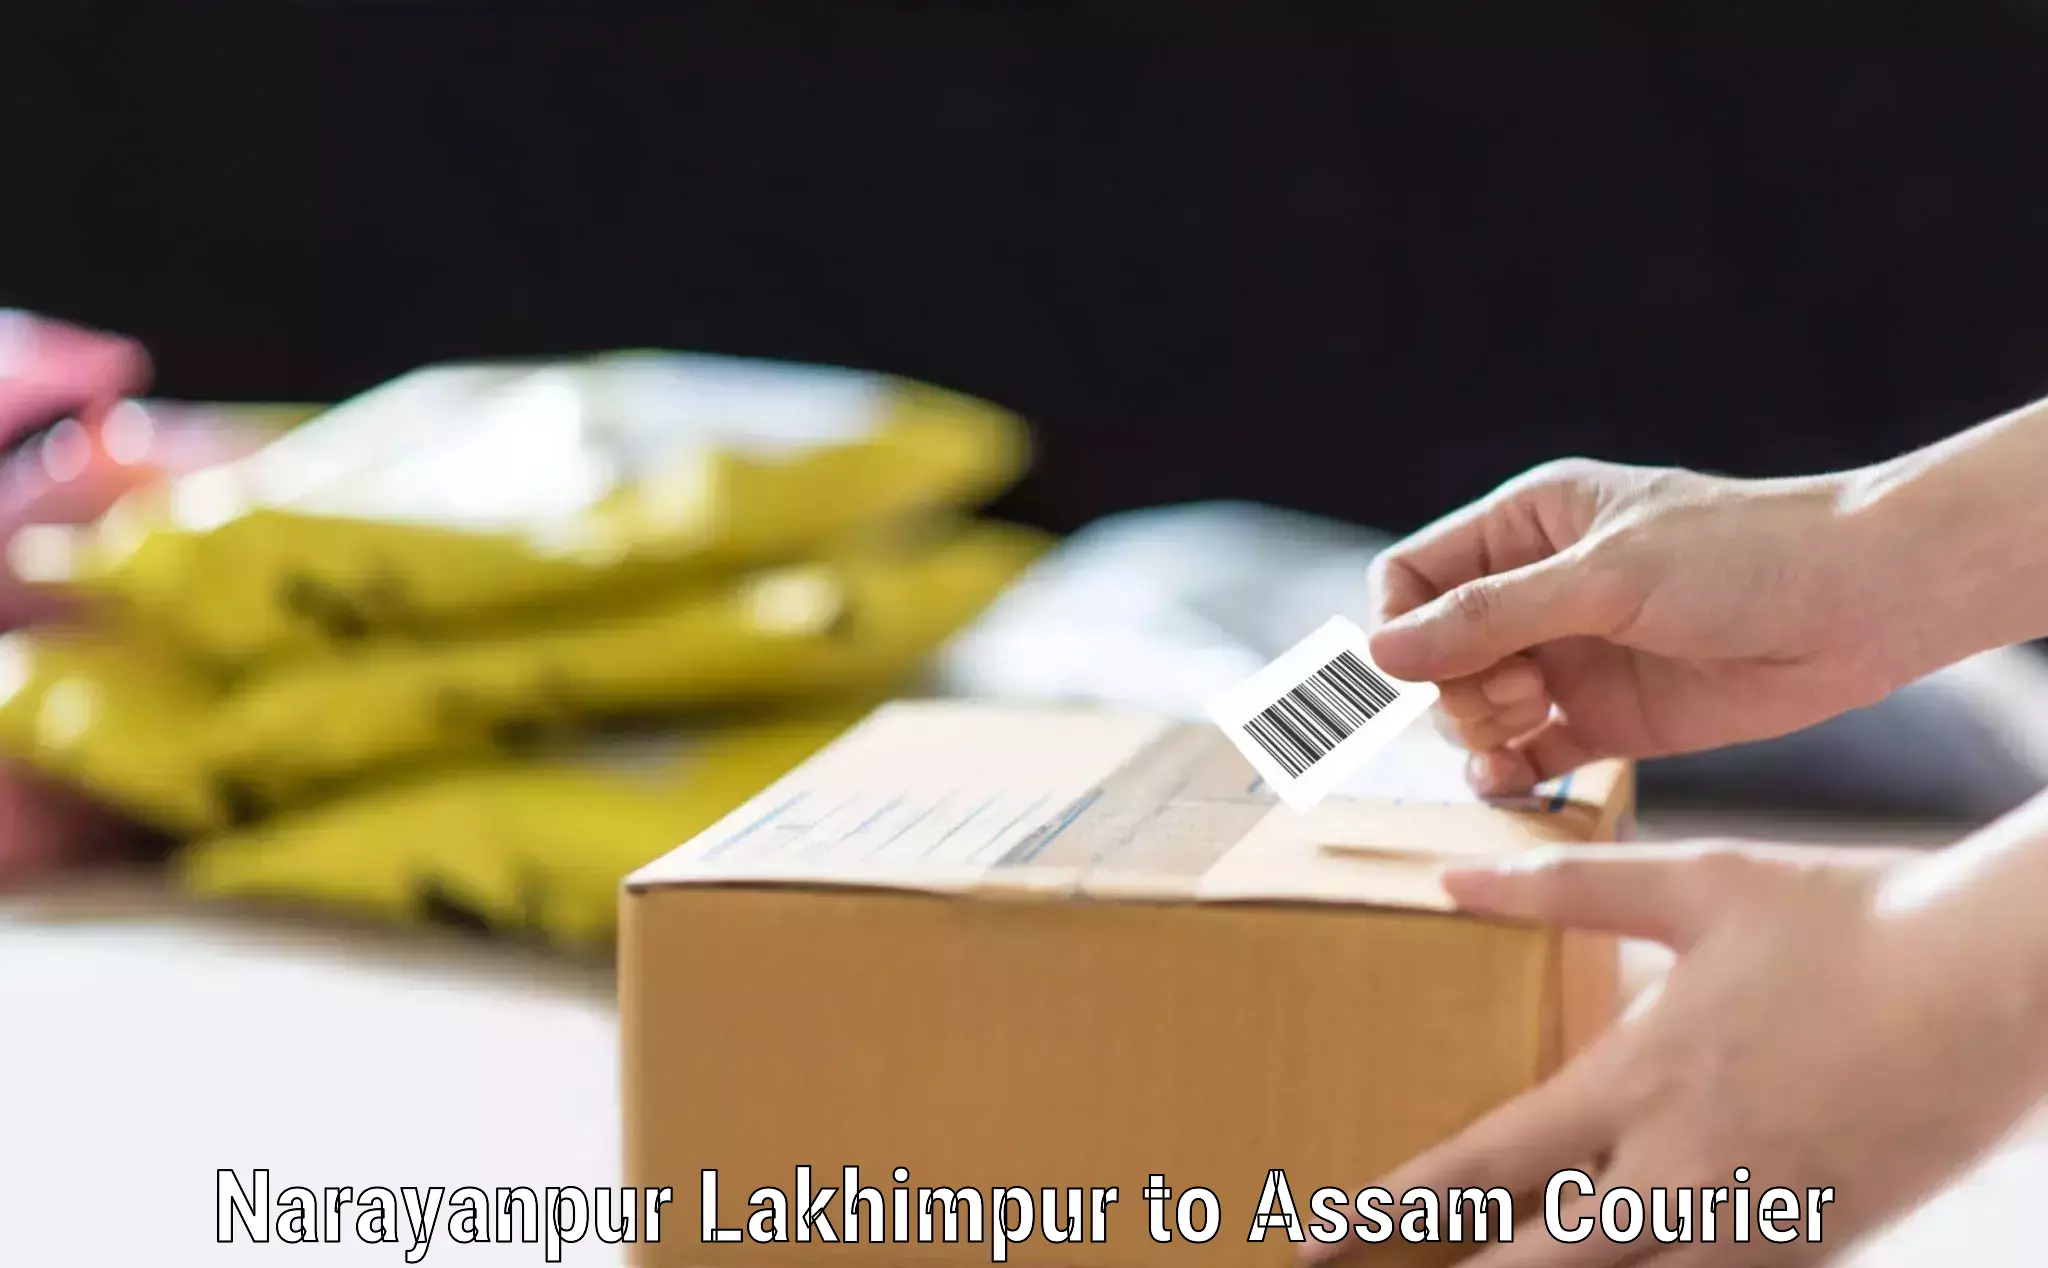 Baggage courier FAQs Narayanpur Lakhimpur to Lakhipur